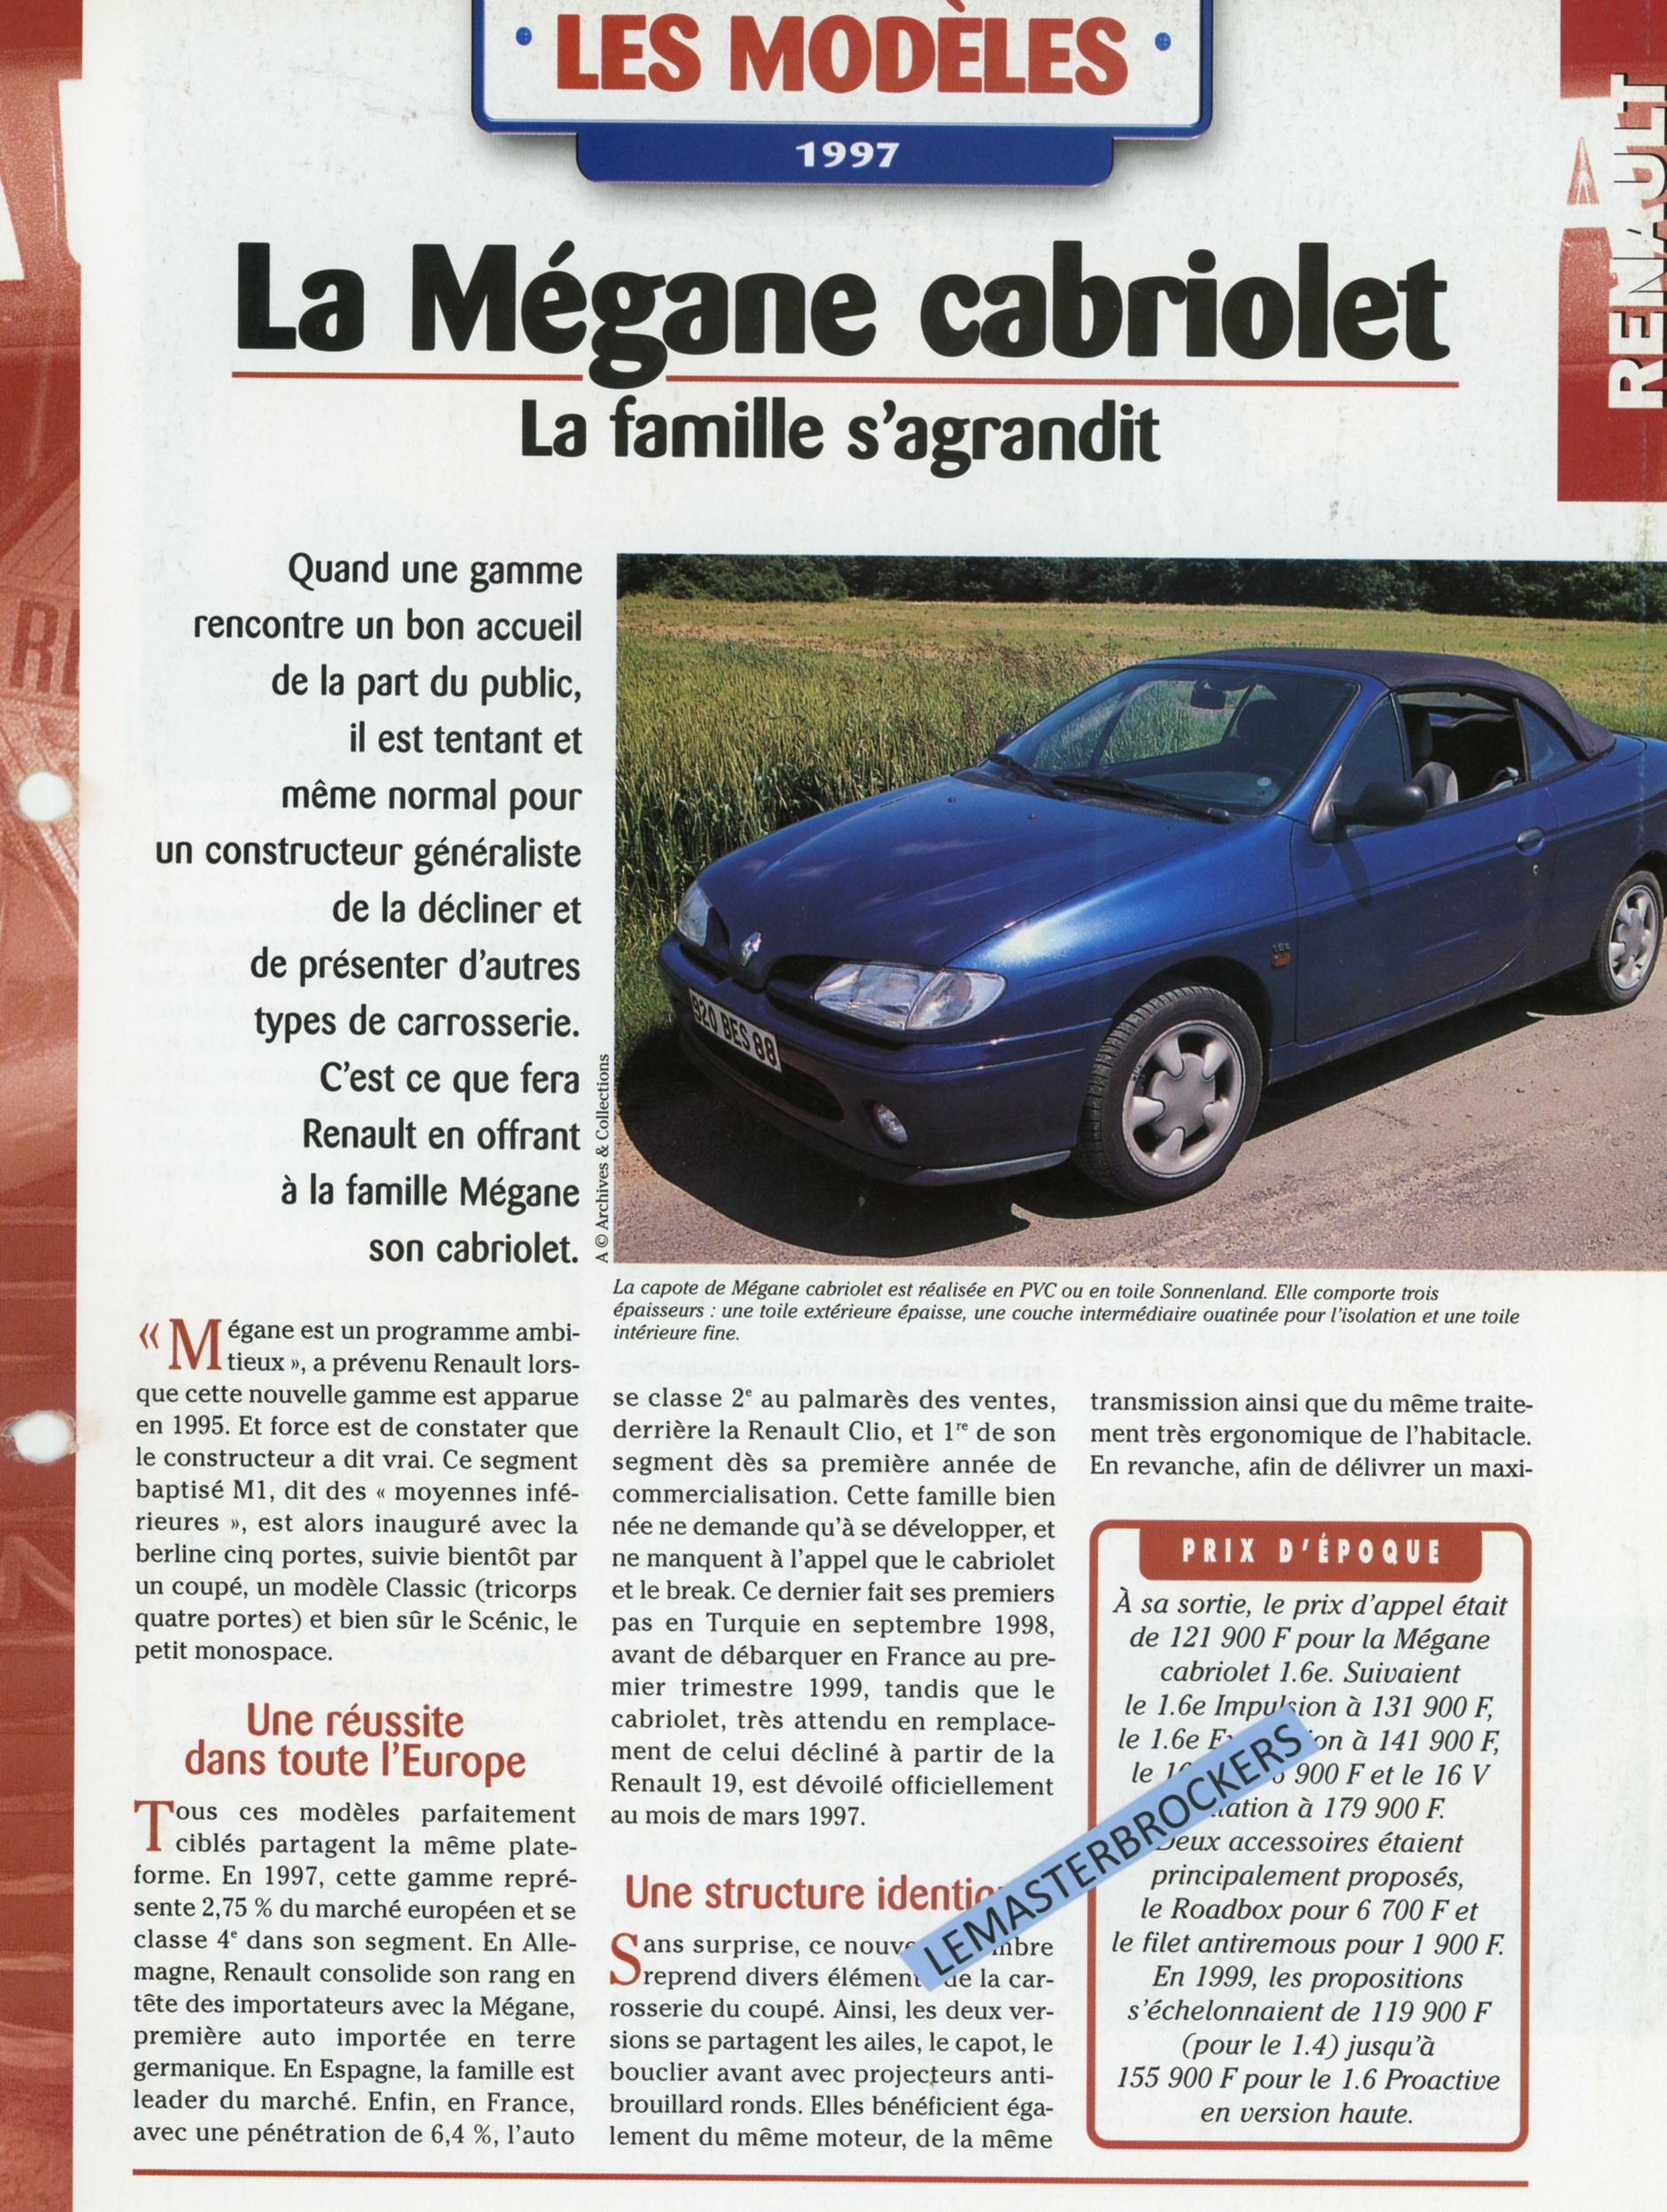 RENAULT MÉGANE CABRIOLET - FICHE AUTO HACHETTE LES MODÈLES 1997